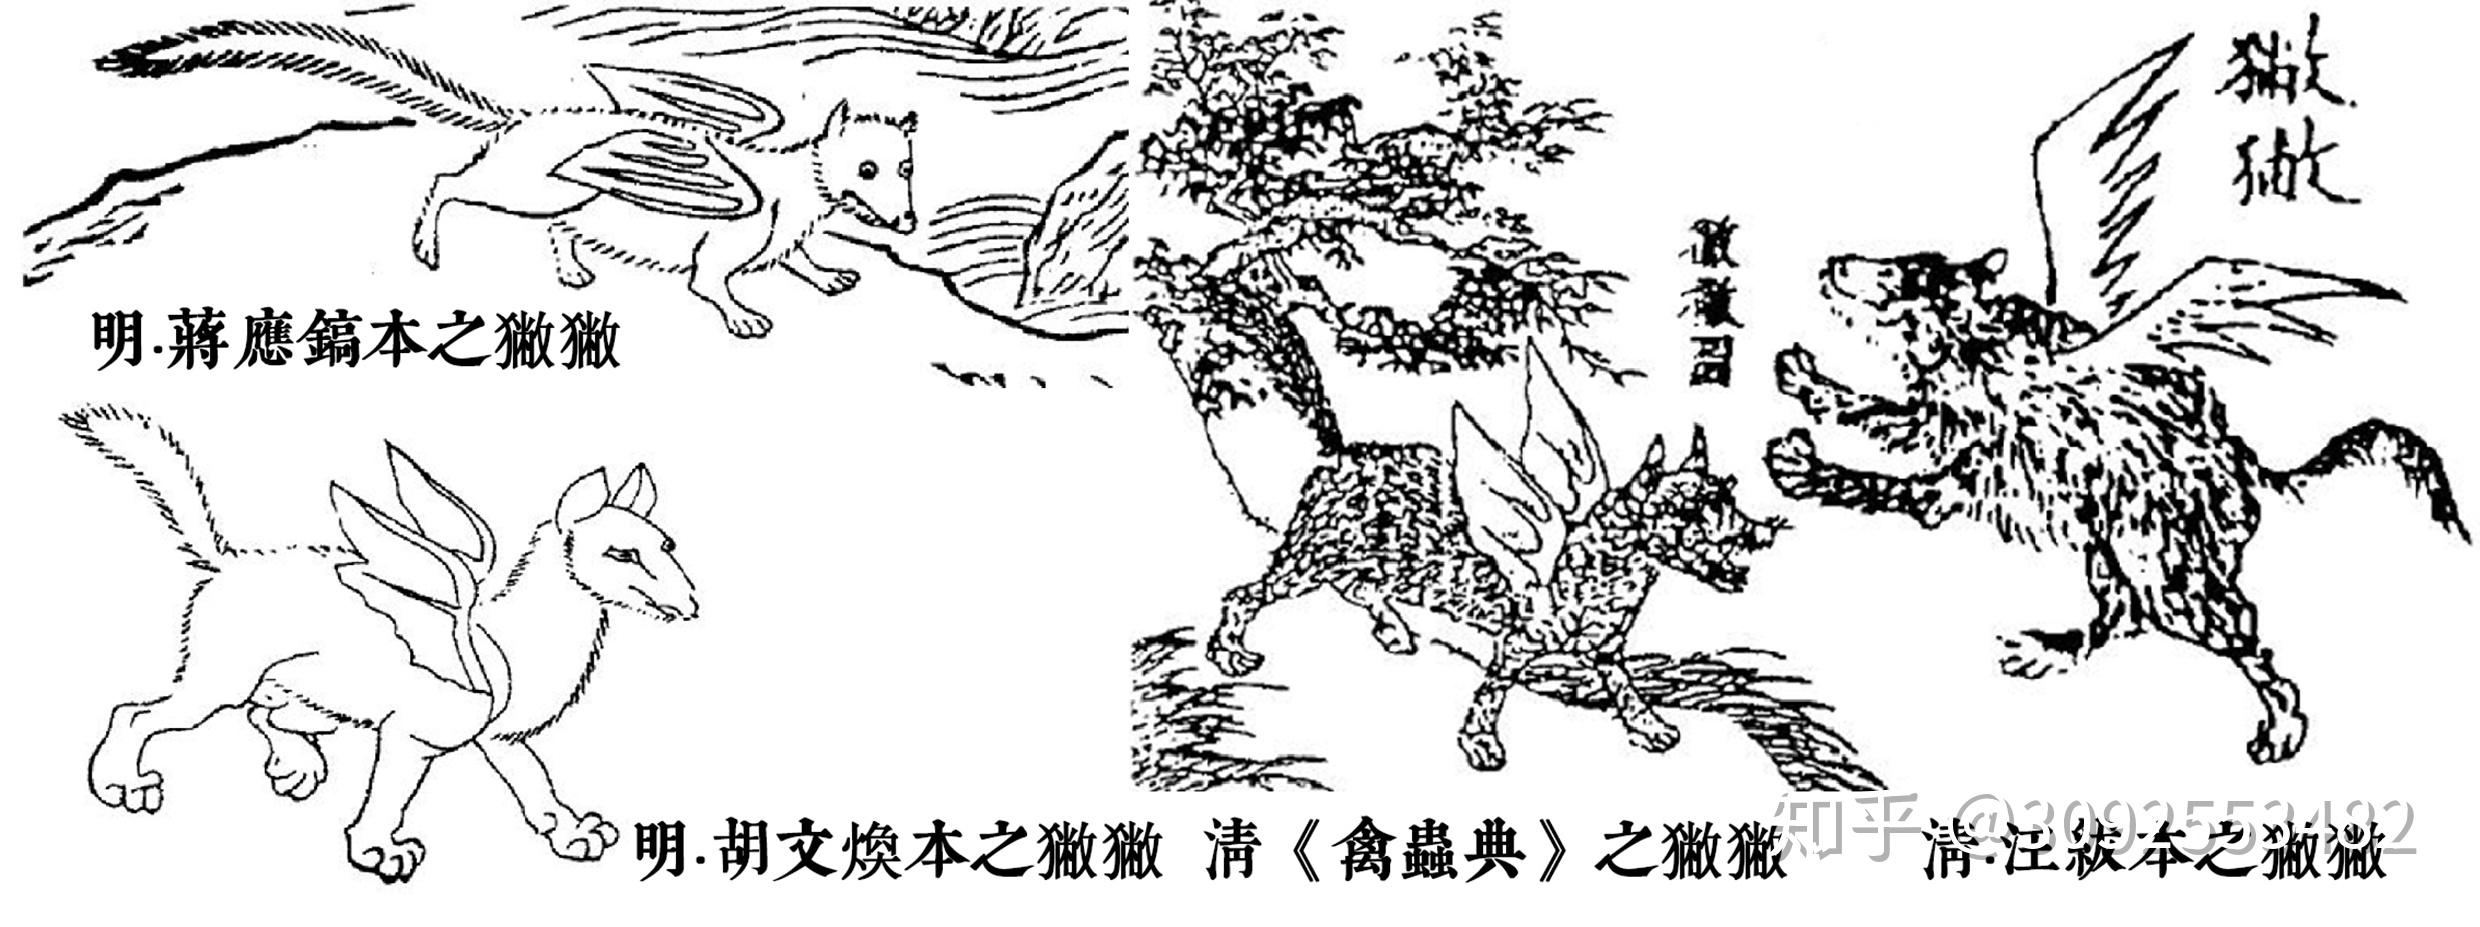 狐文化特辑【二】中国狐文化的早期形态插图(6)